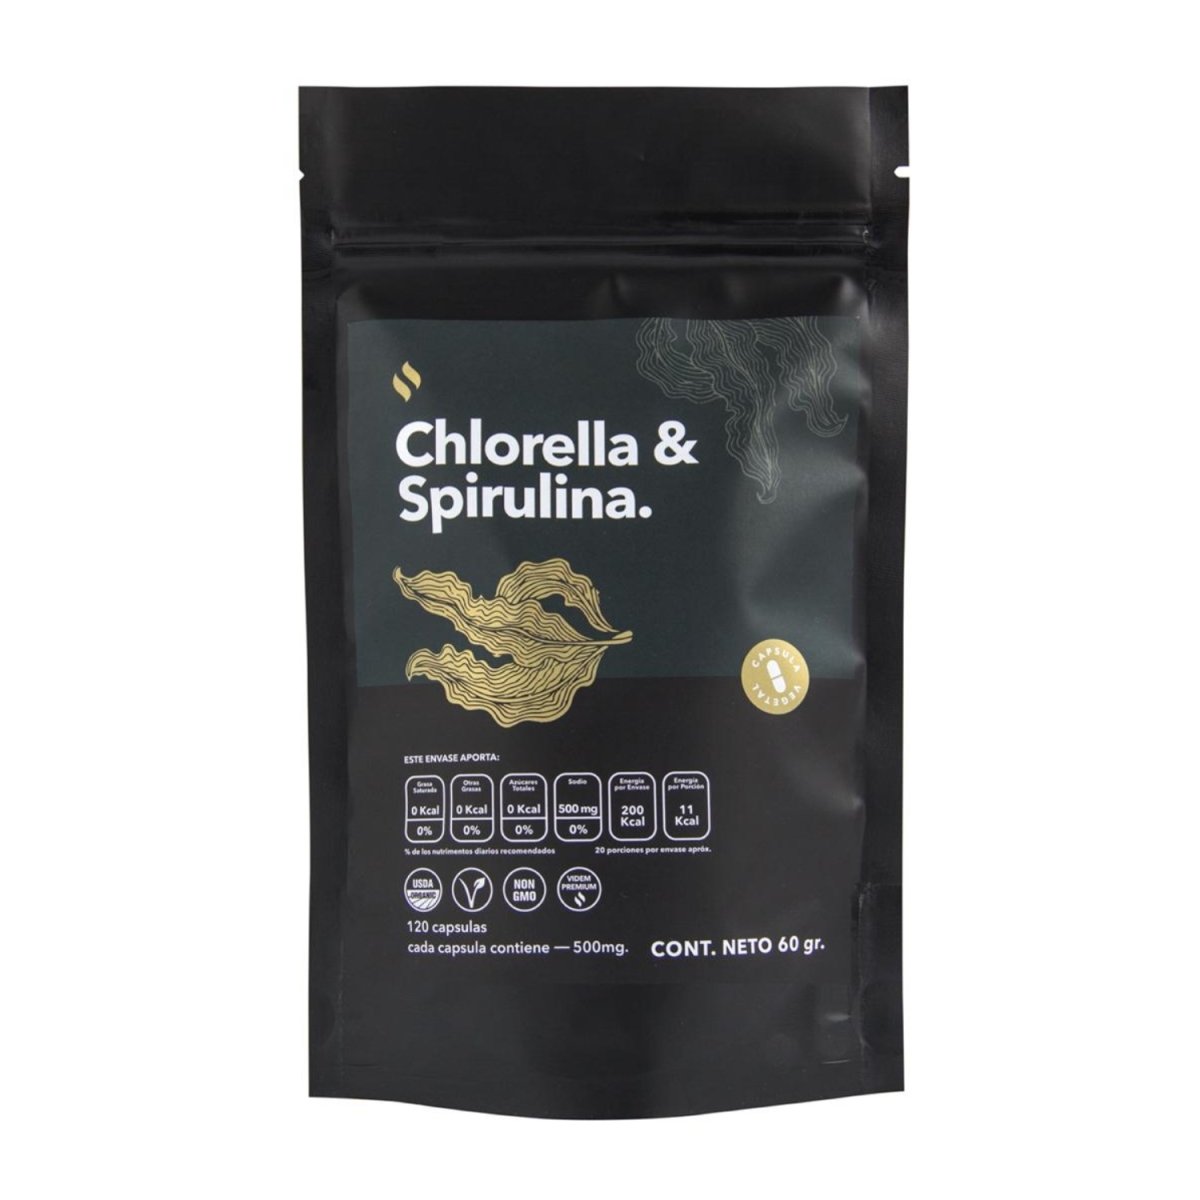 Capsulas de Chlorella con Espirulina - Good Express mx